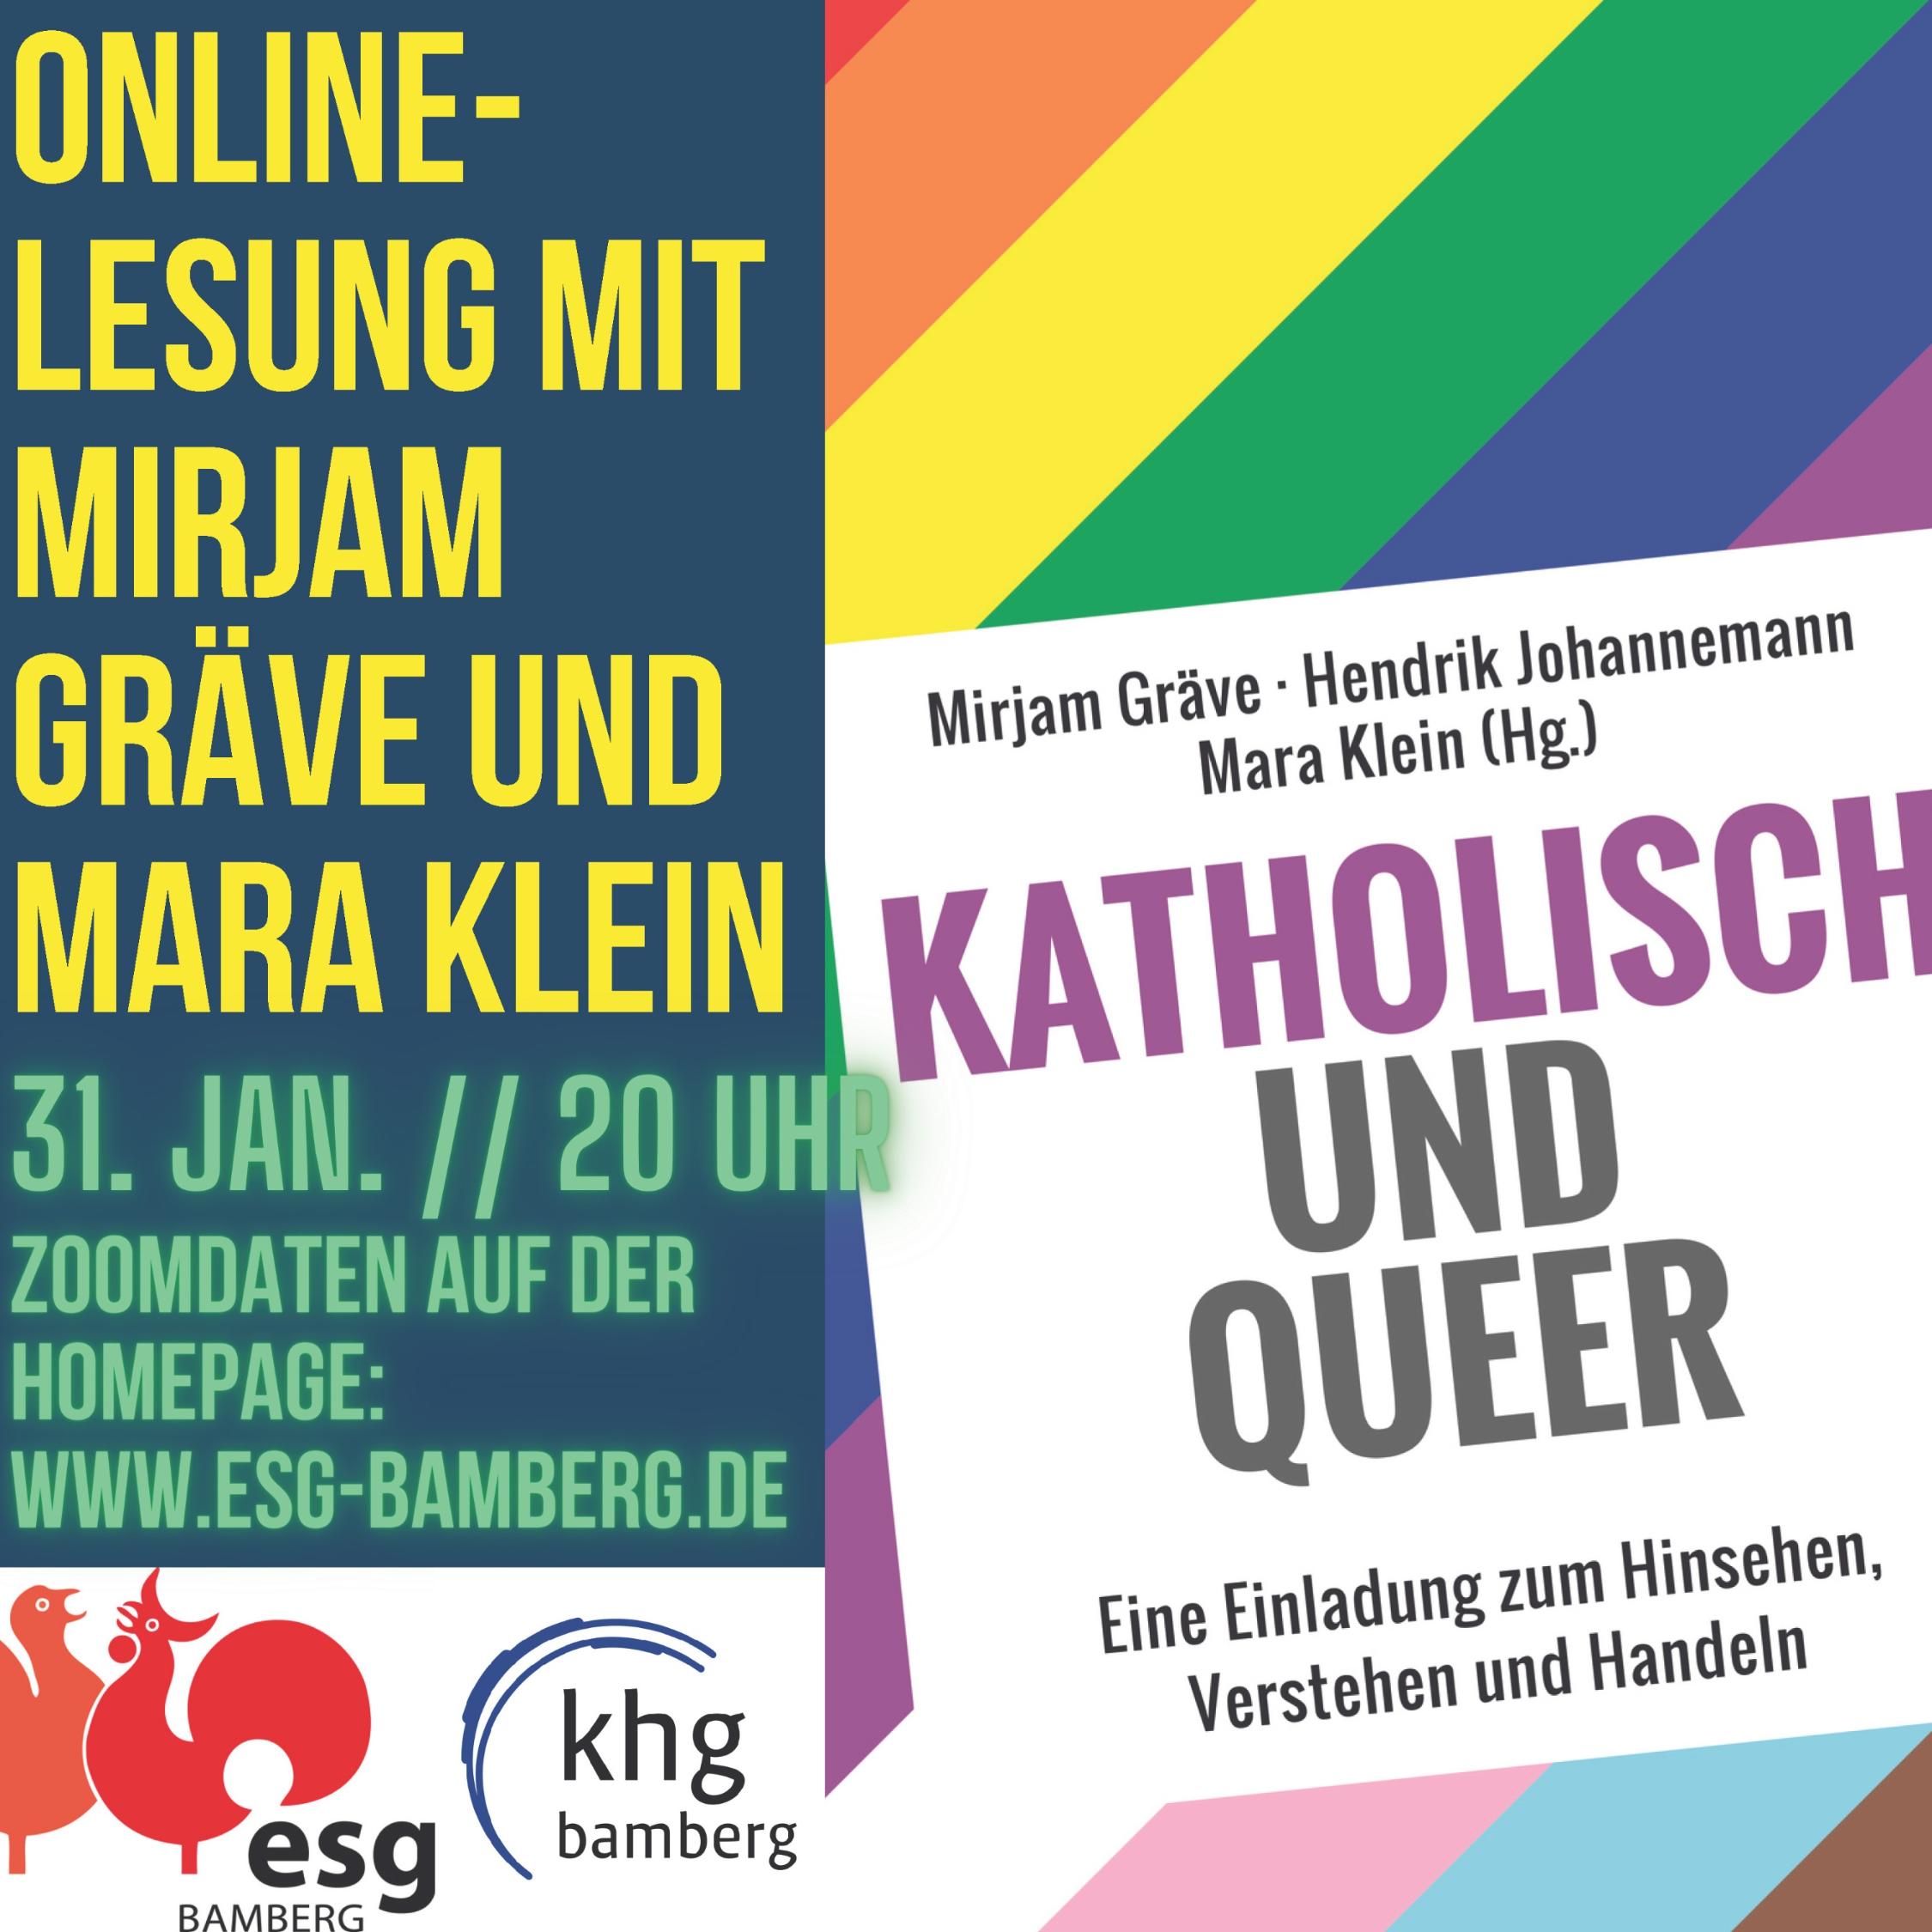 Katholisch und queer- Lesung am 31. Jan. 2022